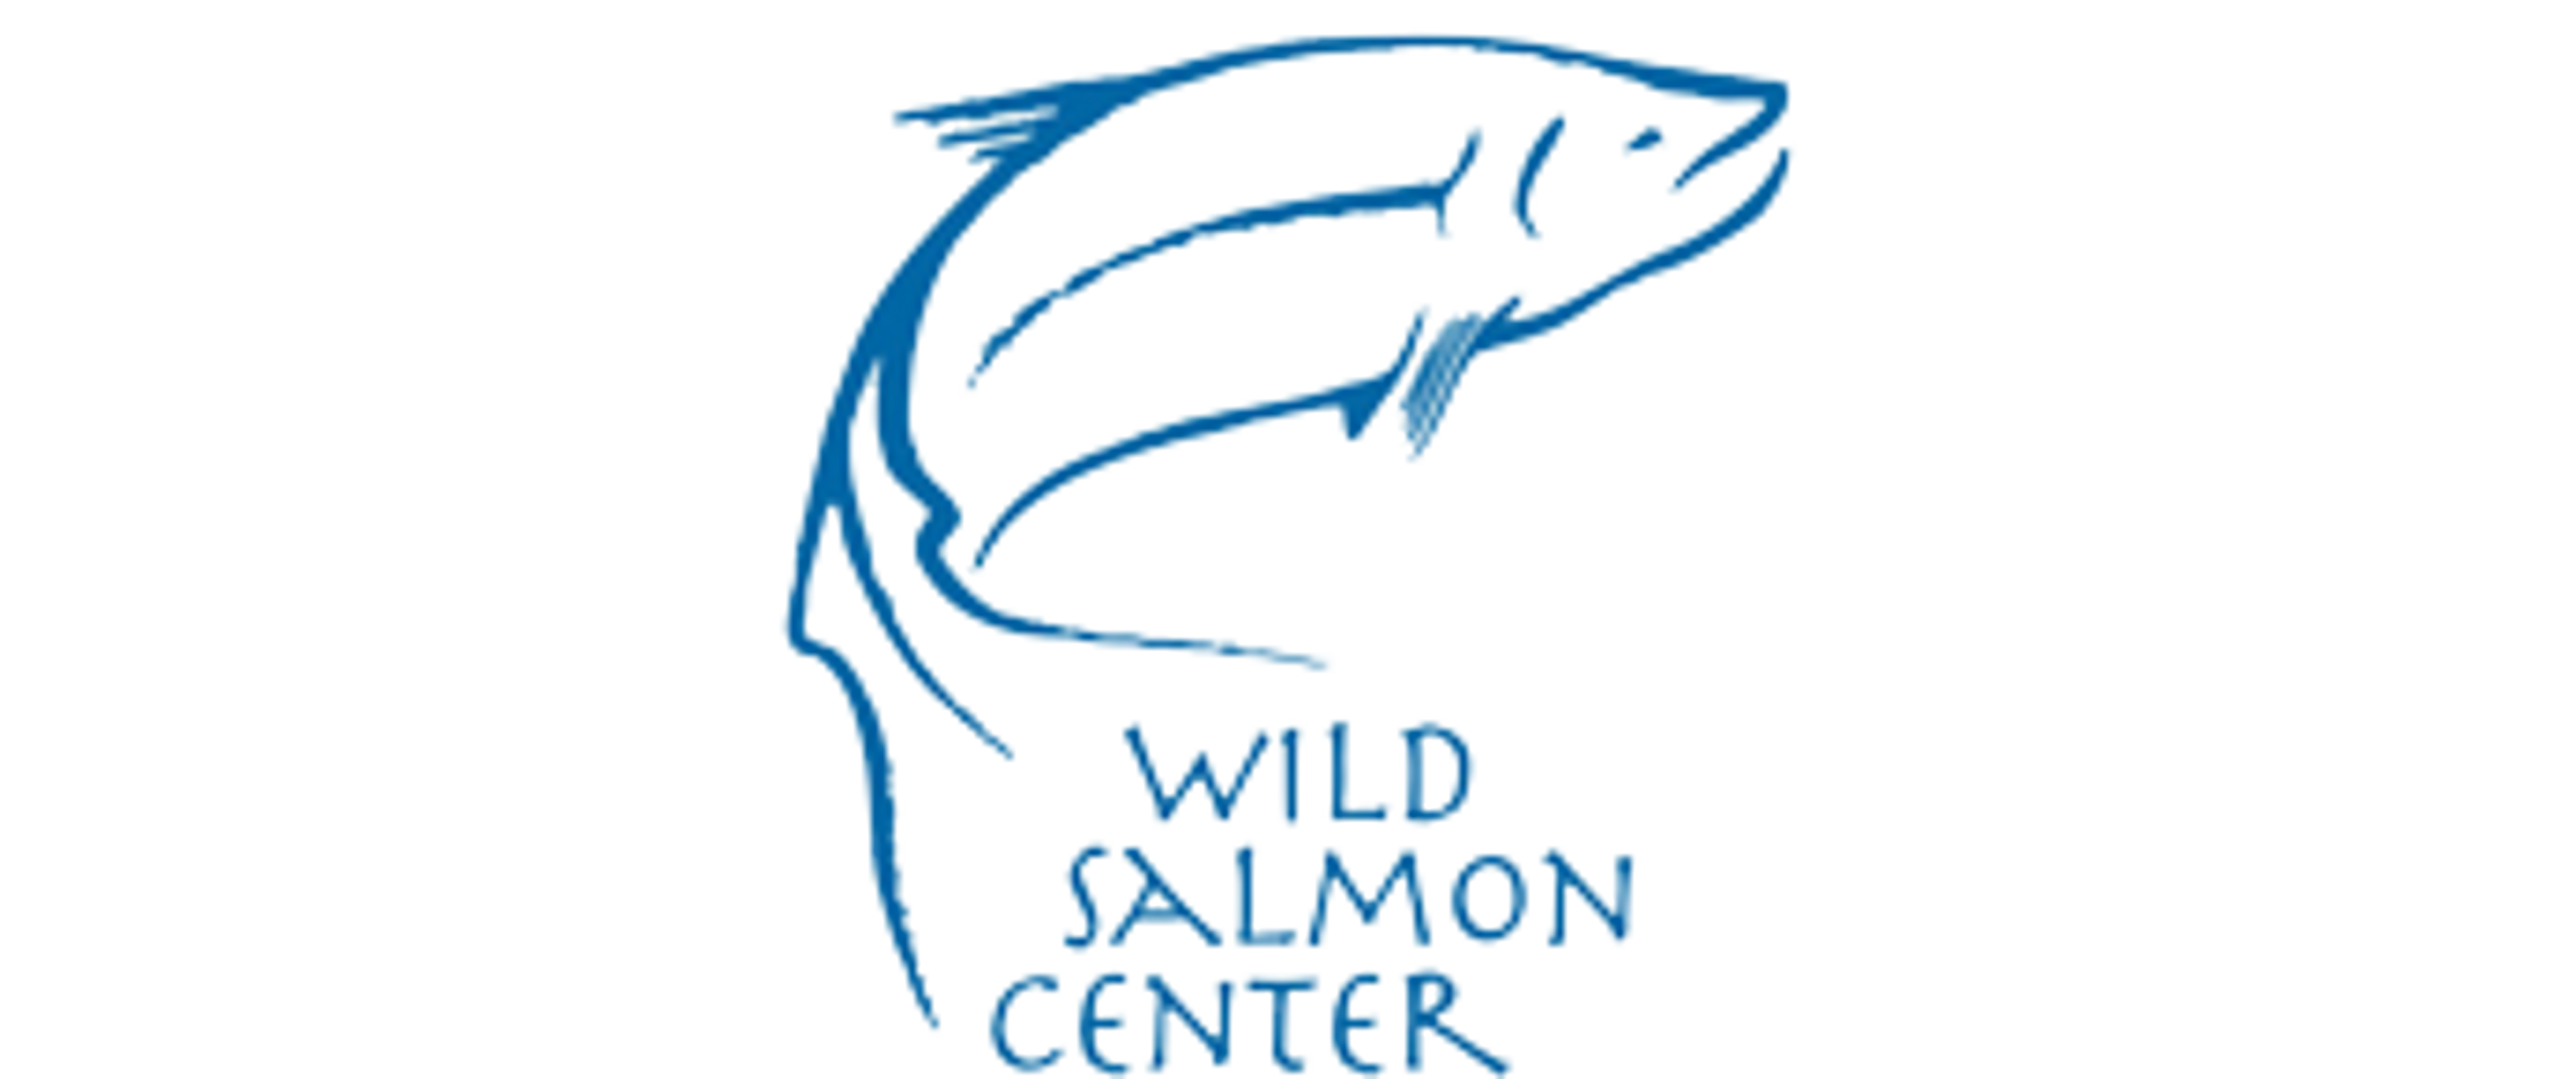 Wild Salmon Center logo.